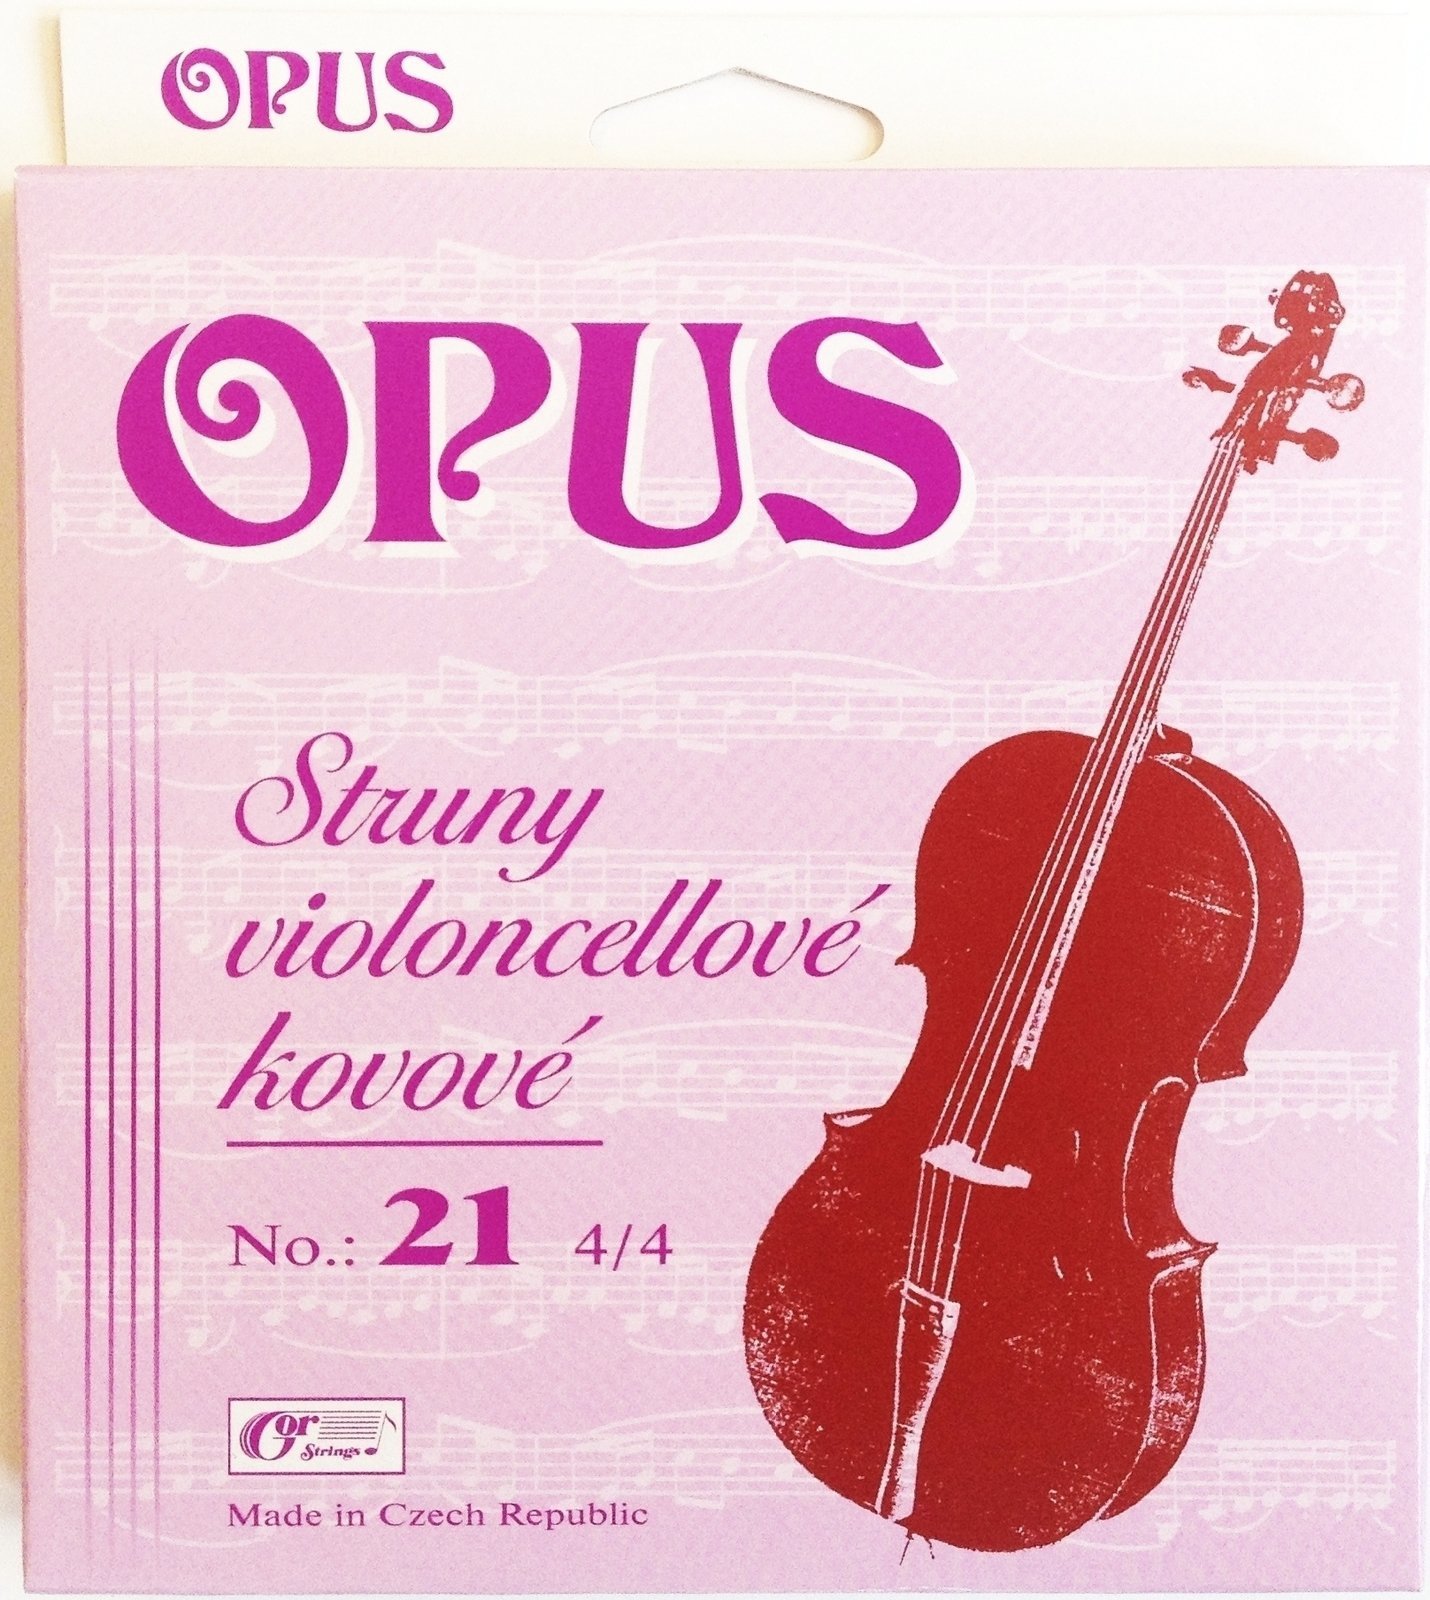 Struny pre violončelo Gorstrings OPUS 21 Struny pre violončelo